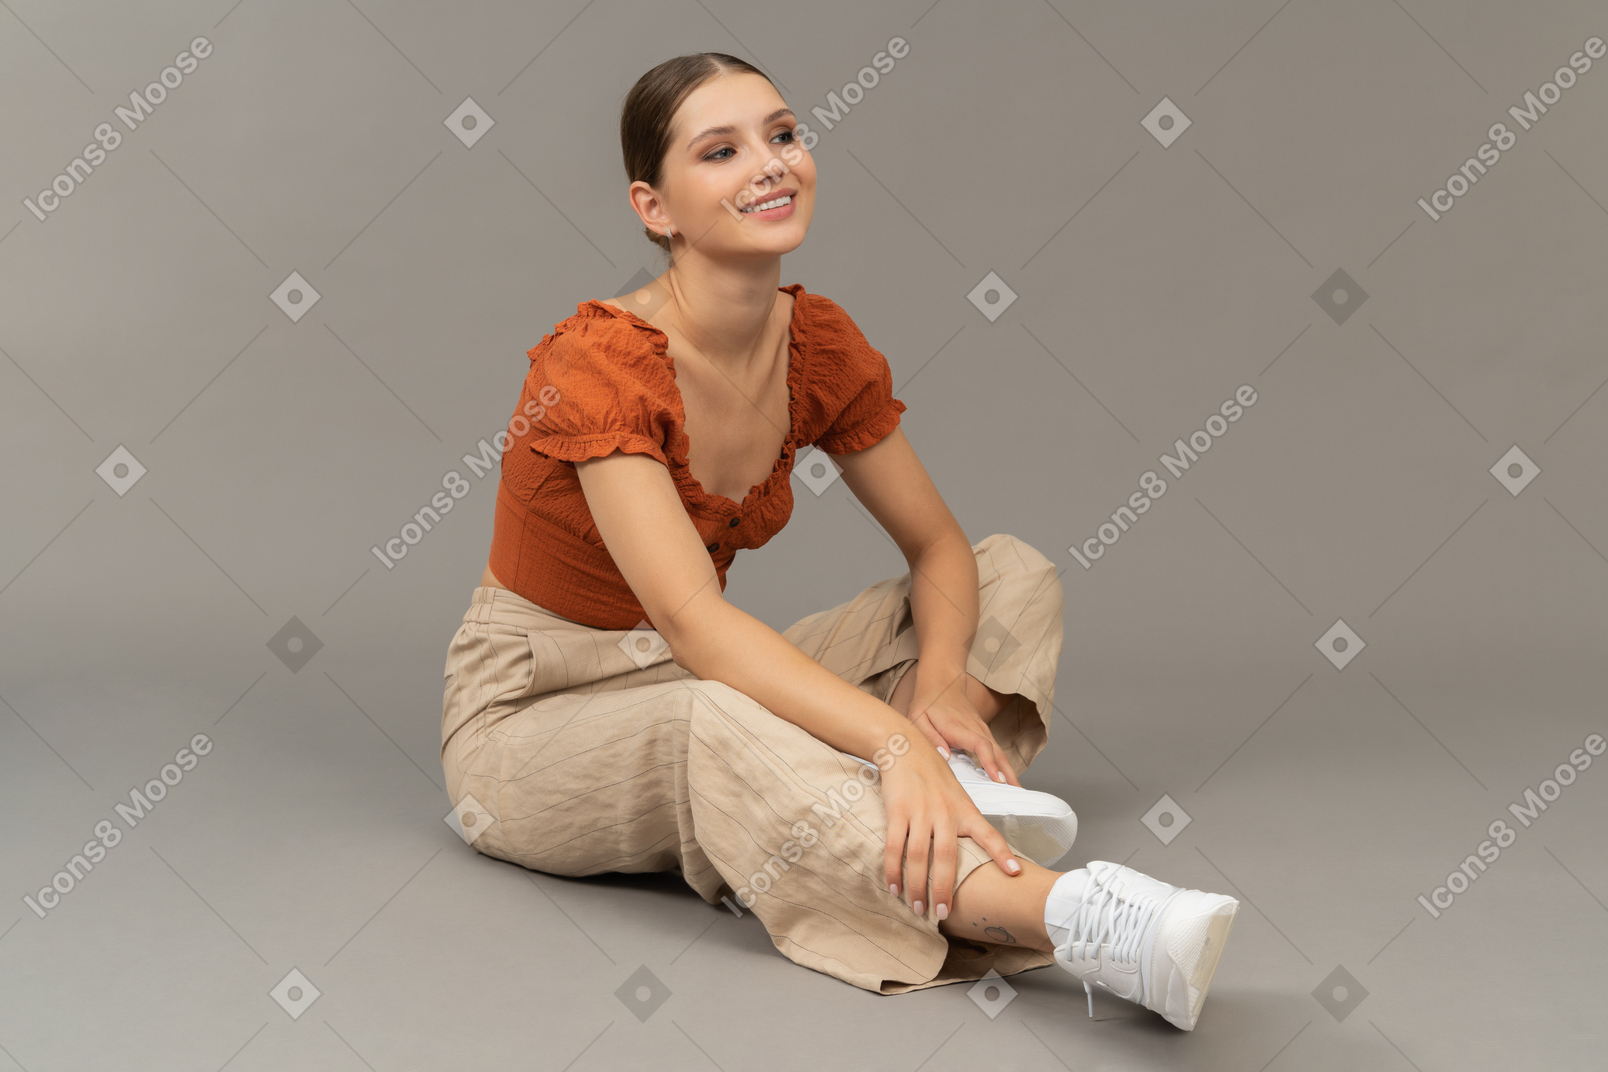 La giovane donna si siede sul pavimento